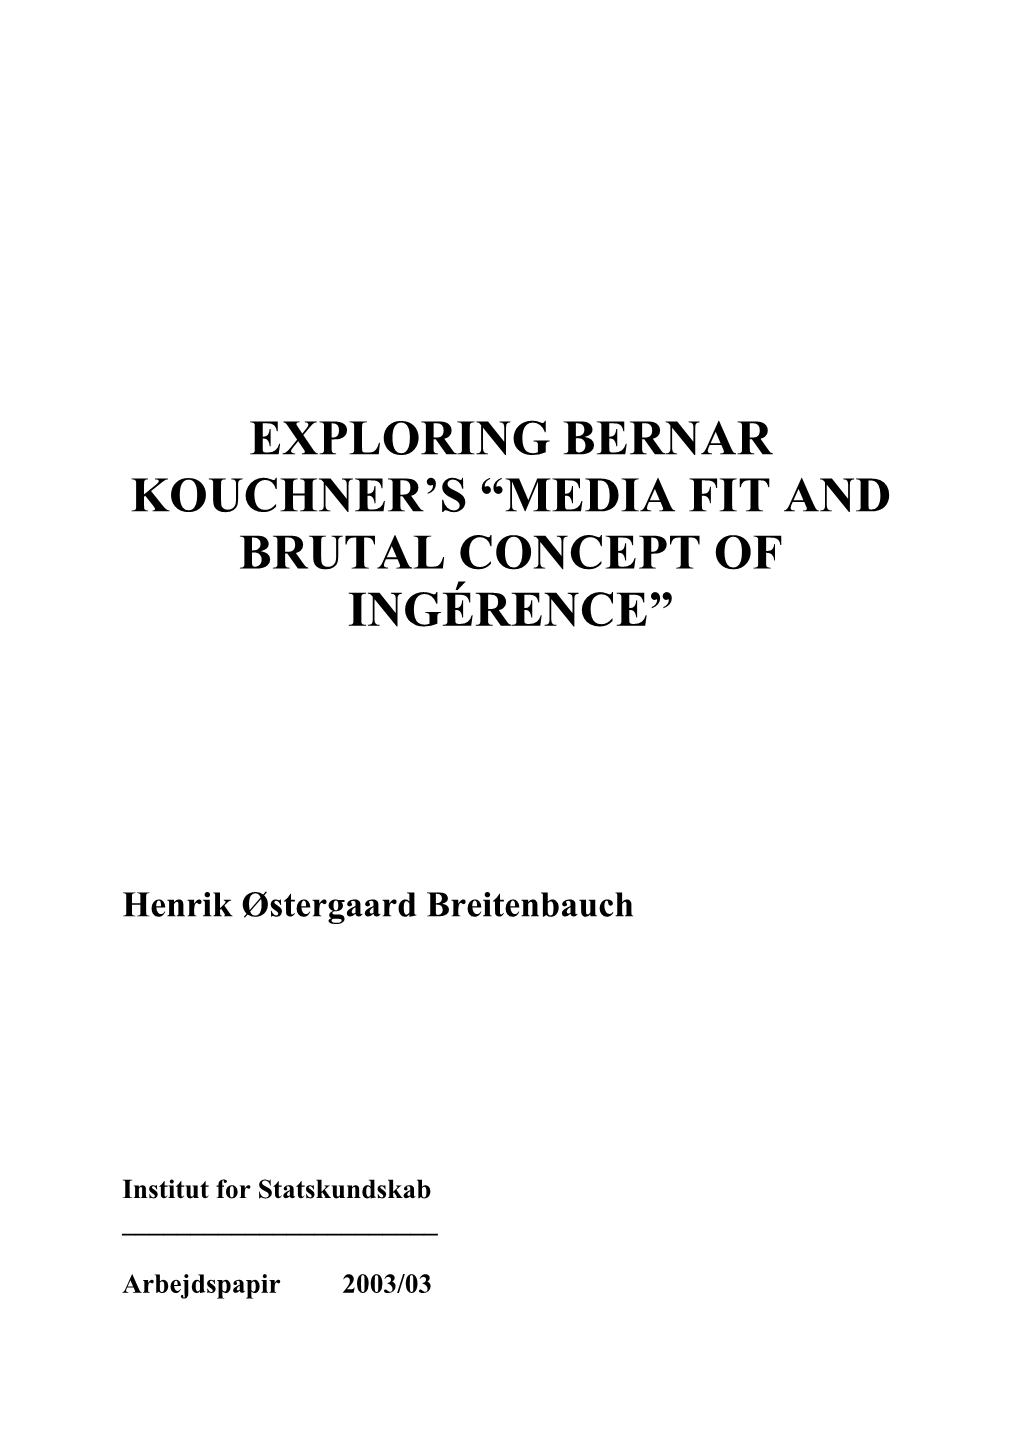 Exploring Bernar Kouchner's “Media Fit and Brutal